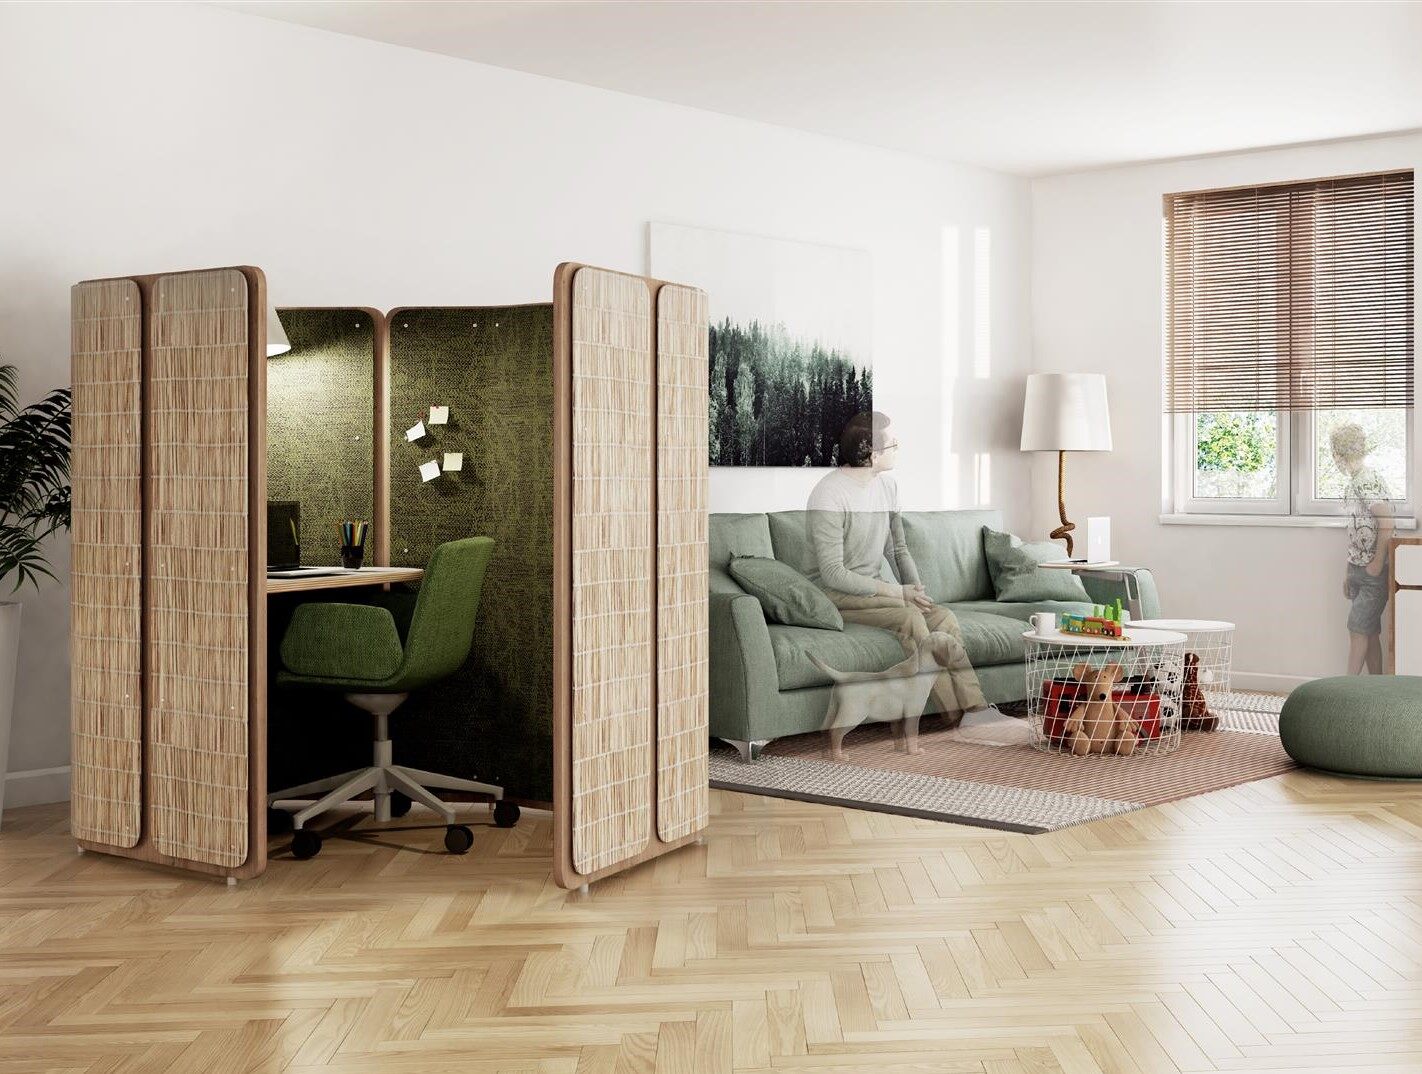 Una nicchia per il lavoro individuale inserita all'interno di una stanza condivisa in una casa crea uno spazio privato chiuso.